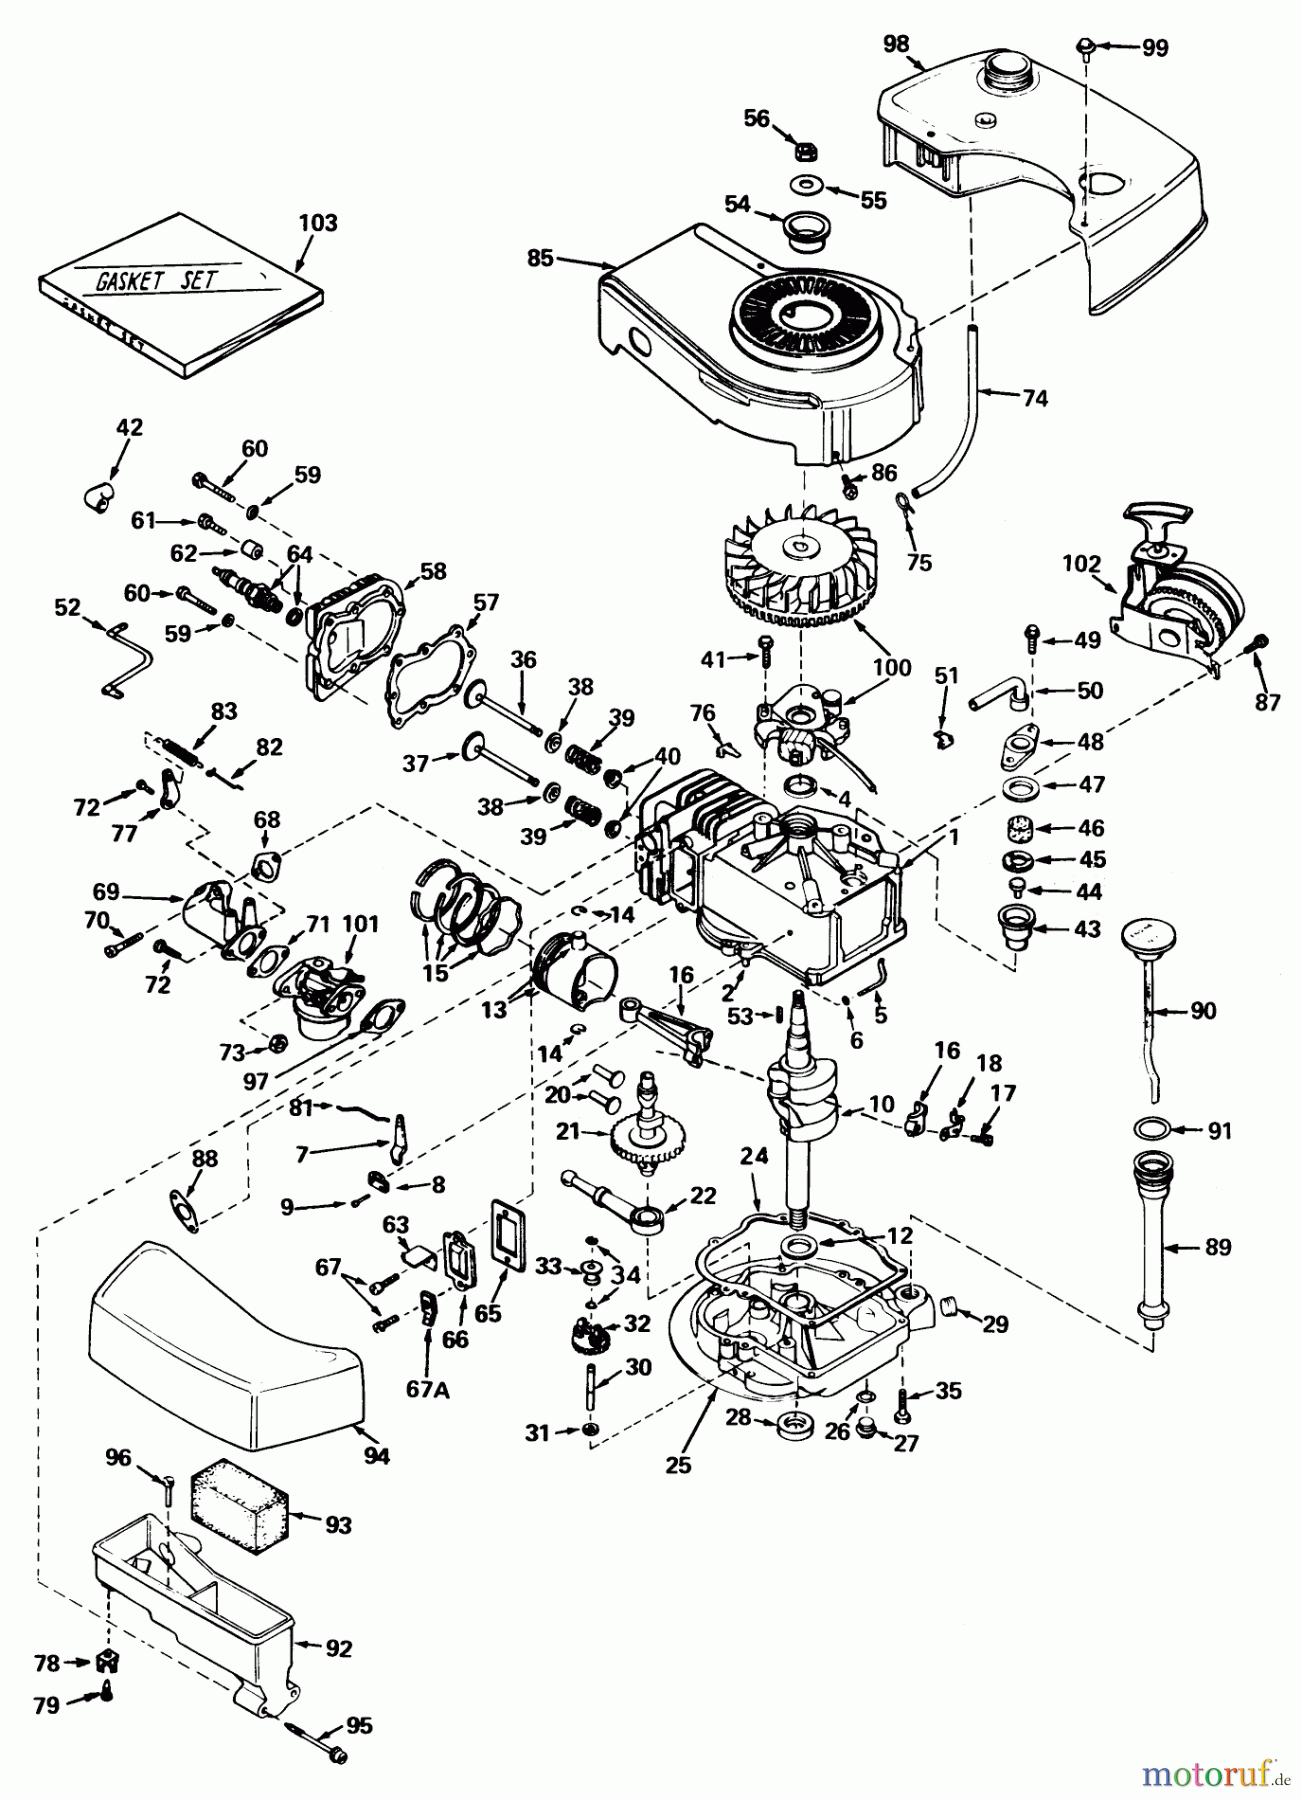  Toro Neu Mowers, Walk-Behind Seite 1 20440 - Toro Lawnmower, 1974 (4000001-4999999) ENGINE TECUMSEH MODEL NO. TNT 120-12002 (MOWER MODEL NOS. 20440 AND 20550)